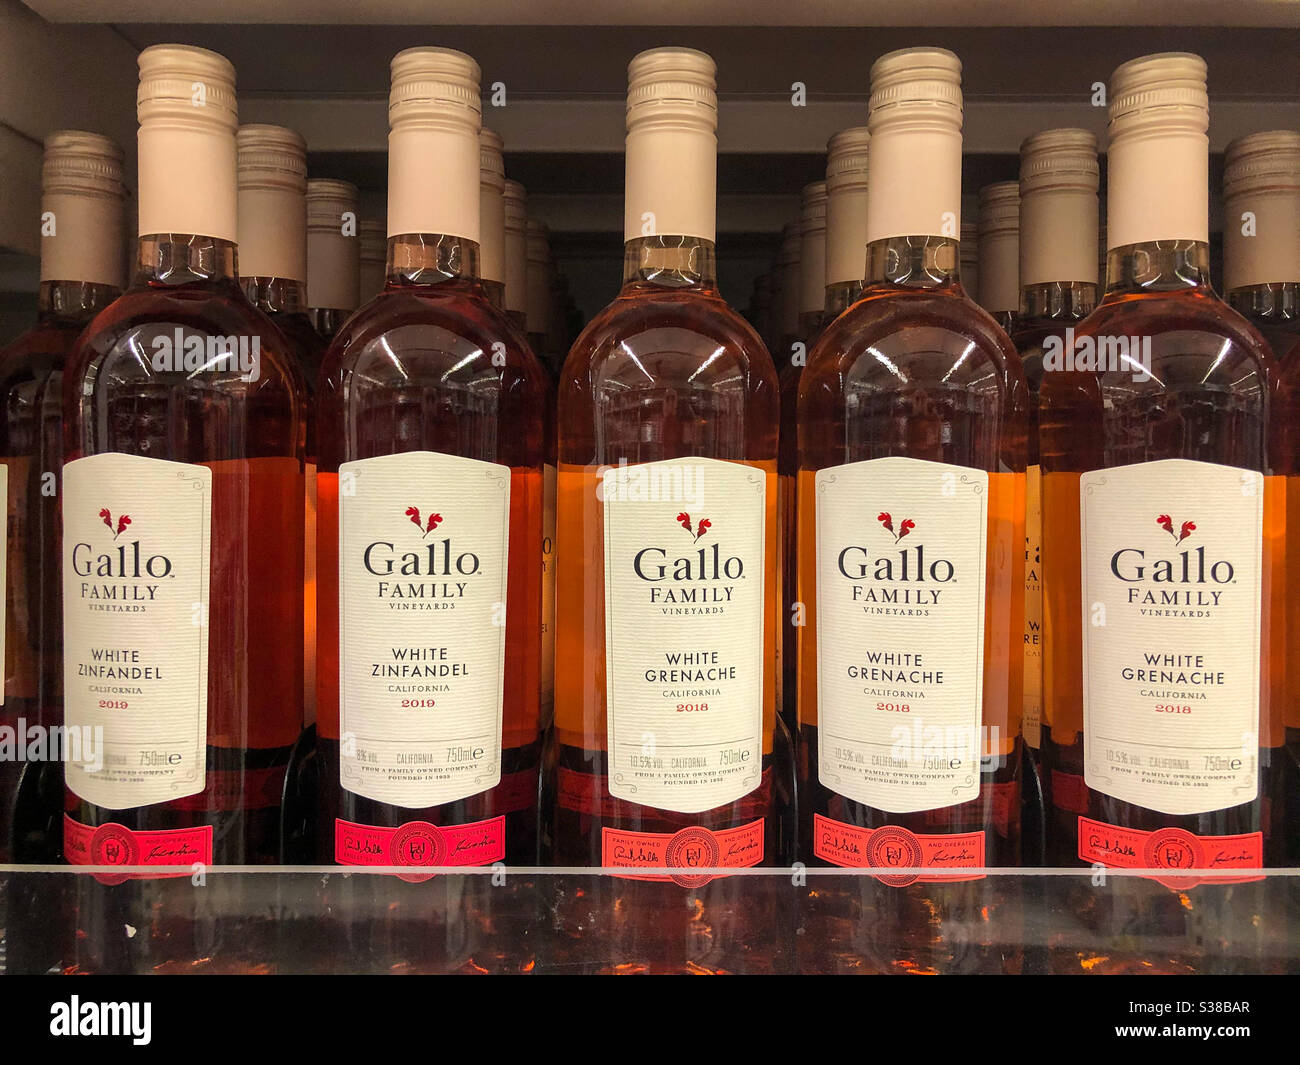 Flaschen Gallo Family Wein auf einem Supermarkt Regal Stockfotografie -  Alamy